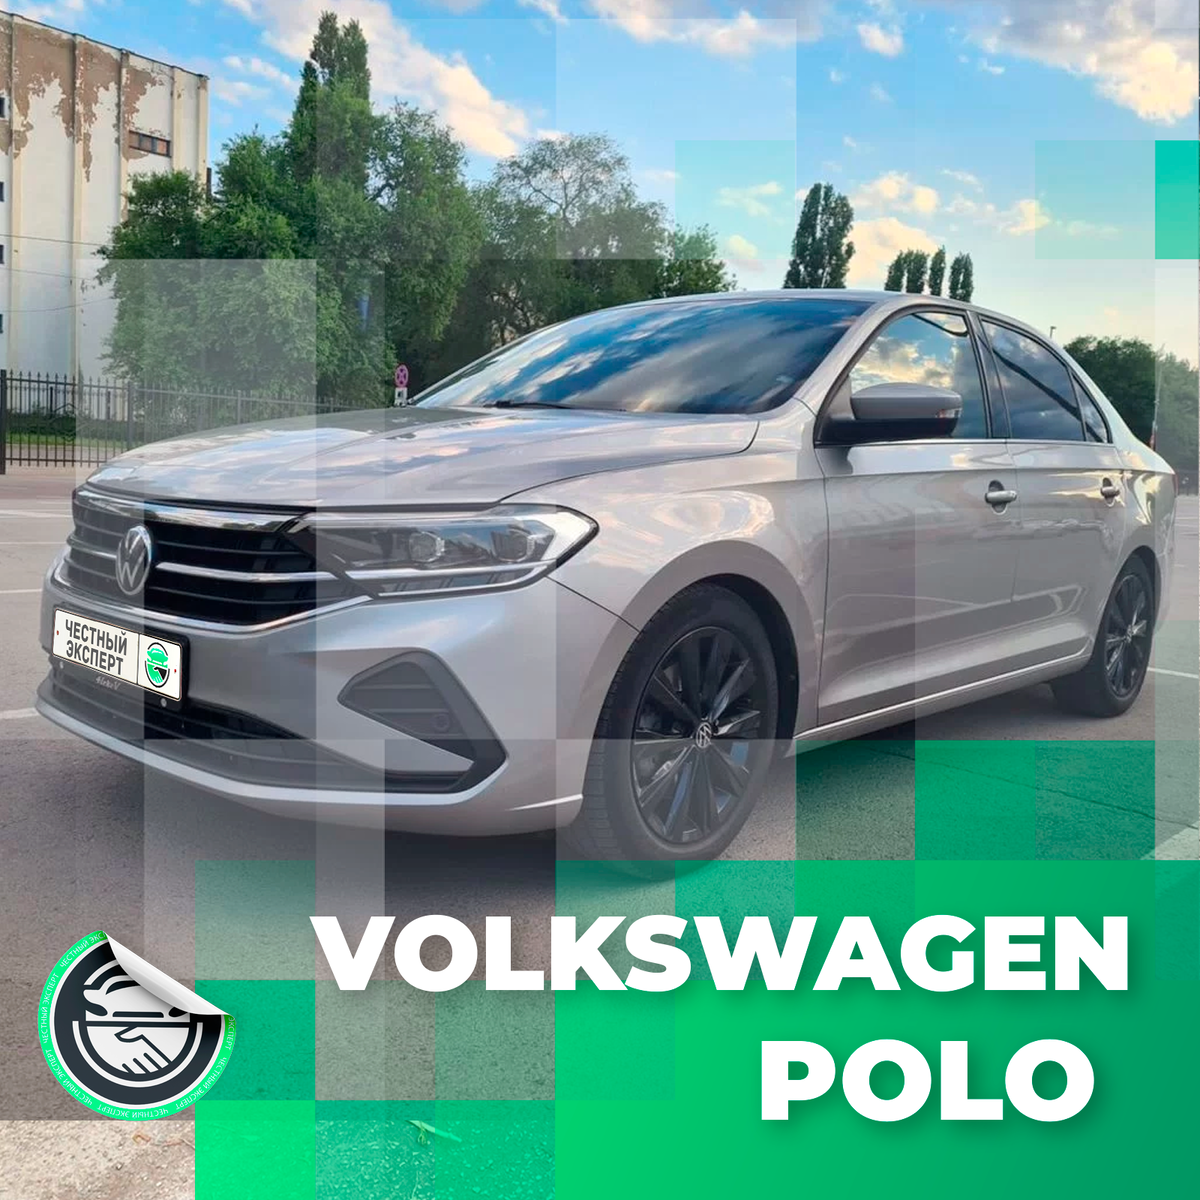 Volksvagen Polo 1.4 л.турбо DSG
#АвтоподборЧЭ #ПодборЧЭVolkswagen Замечаем, что VW Polo именно с турбированным двигателем 1.4 л.